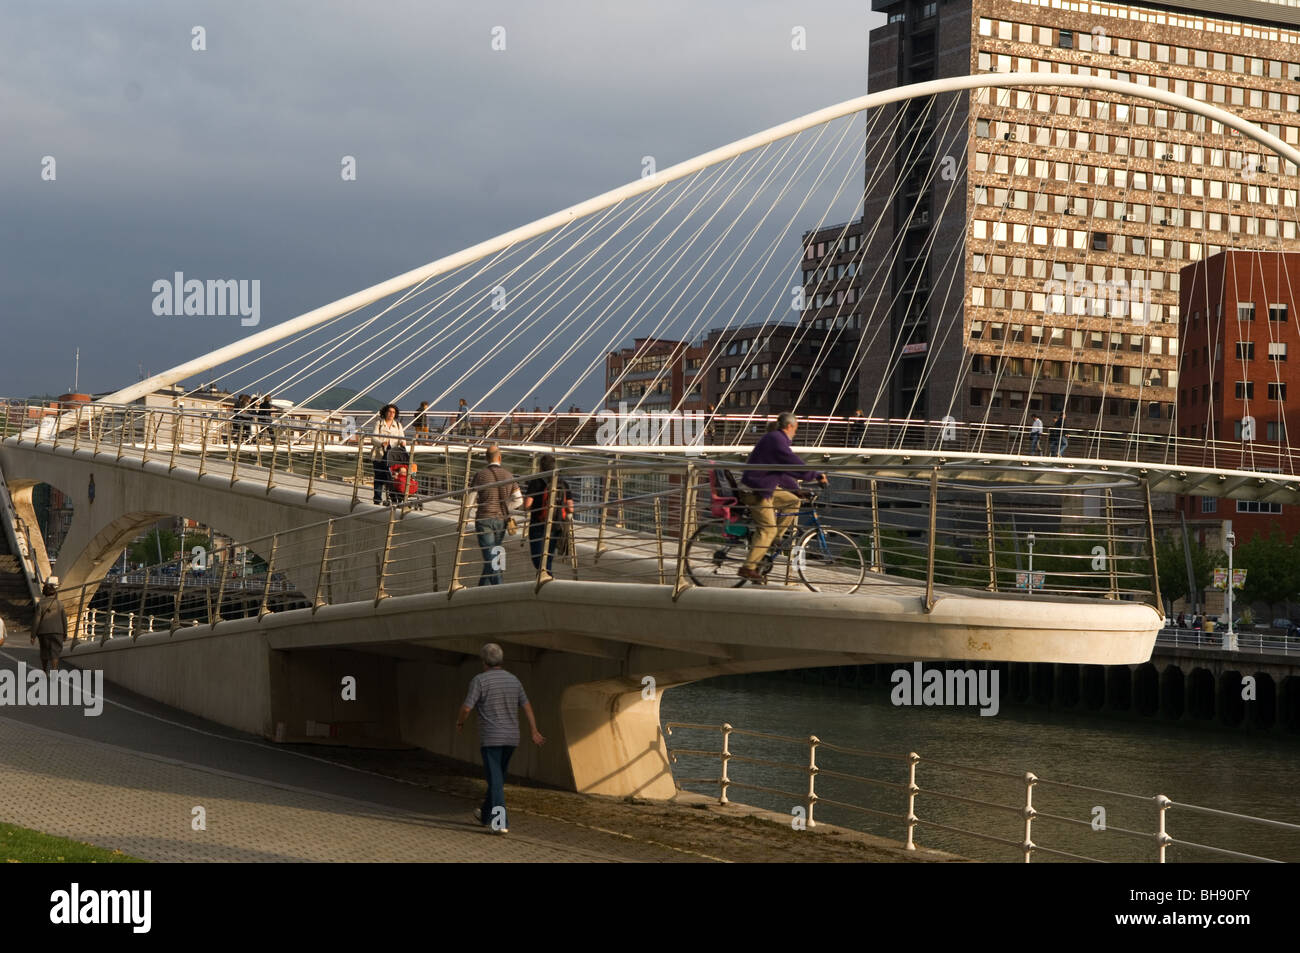 Puente Zubizuri, Bilbao, Euskal Herria, Pais Vasco, Spain Stock Photo